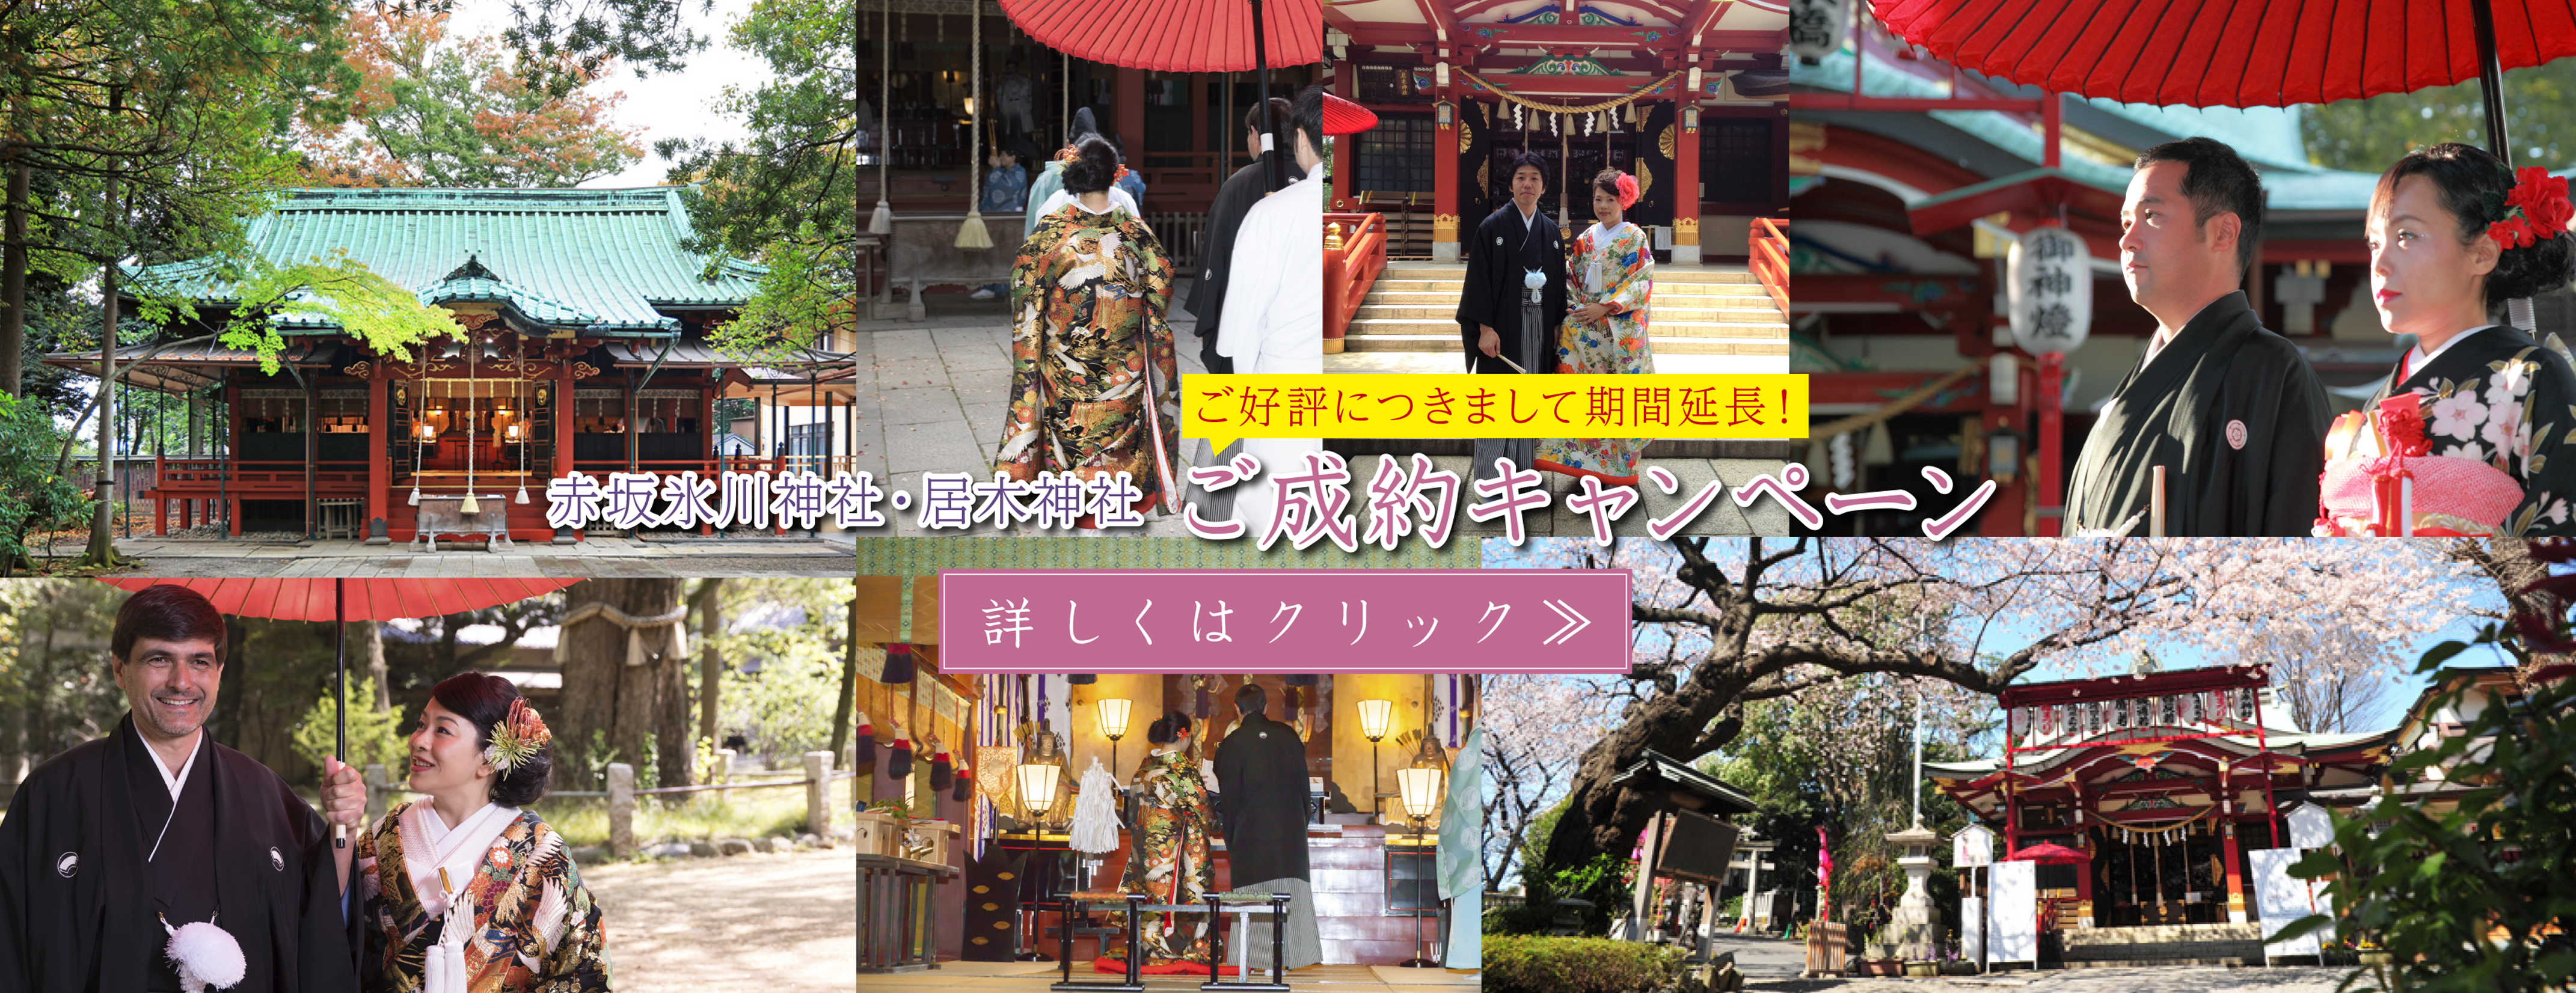 赤坂氷川神社 居木神社神前式プランご成約キャンペーン 和装で結婚式を挙げたい 衣装のレンタルと着付けは東京のブライダルカ レーンにご相談ください